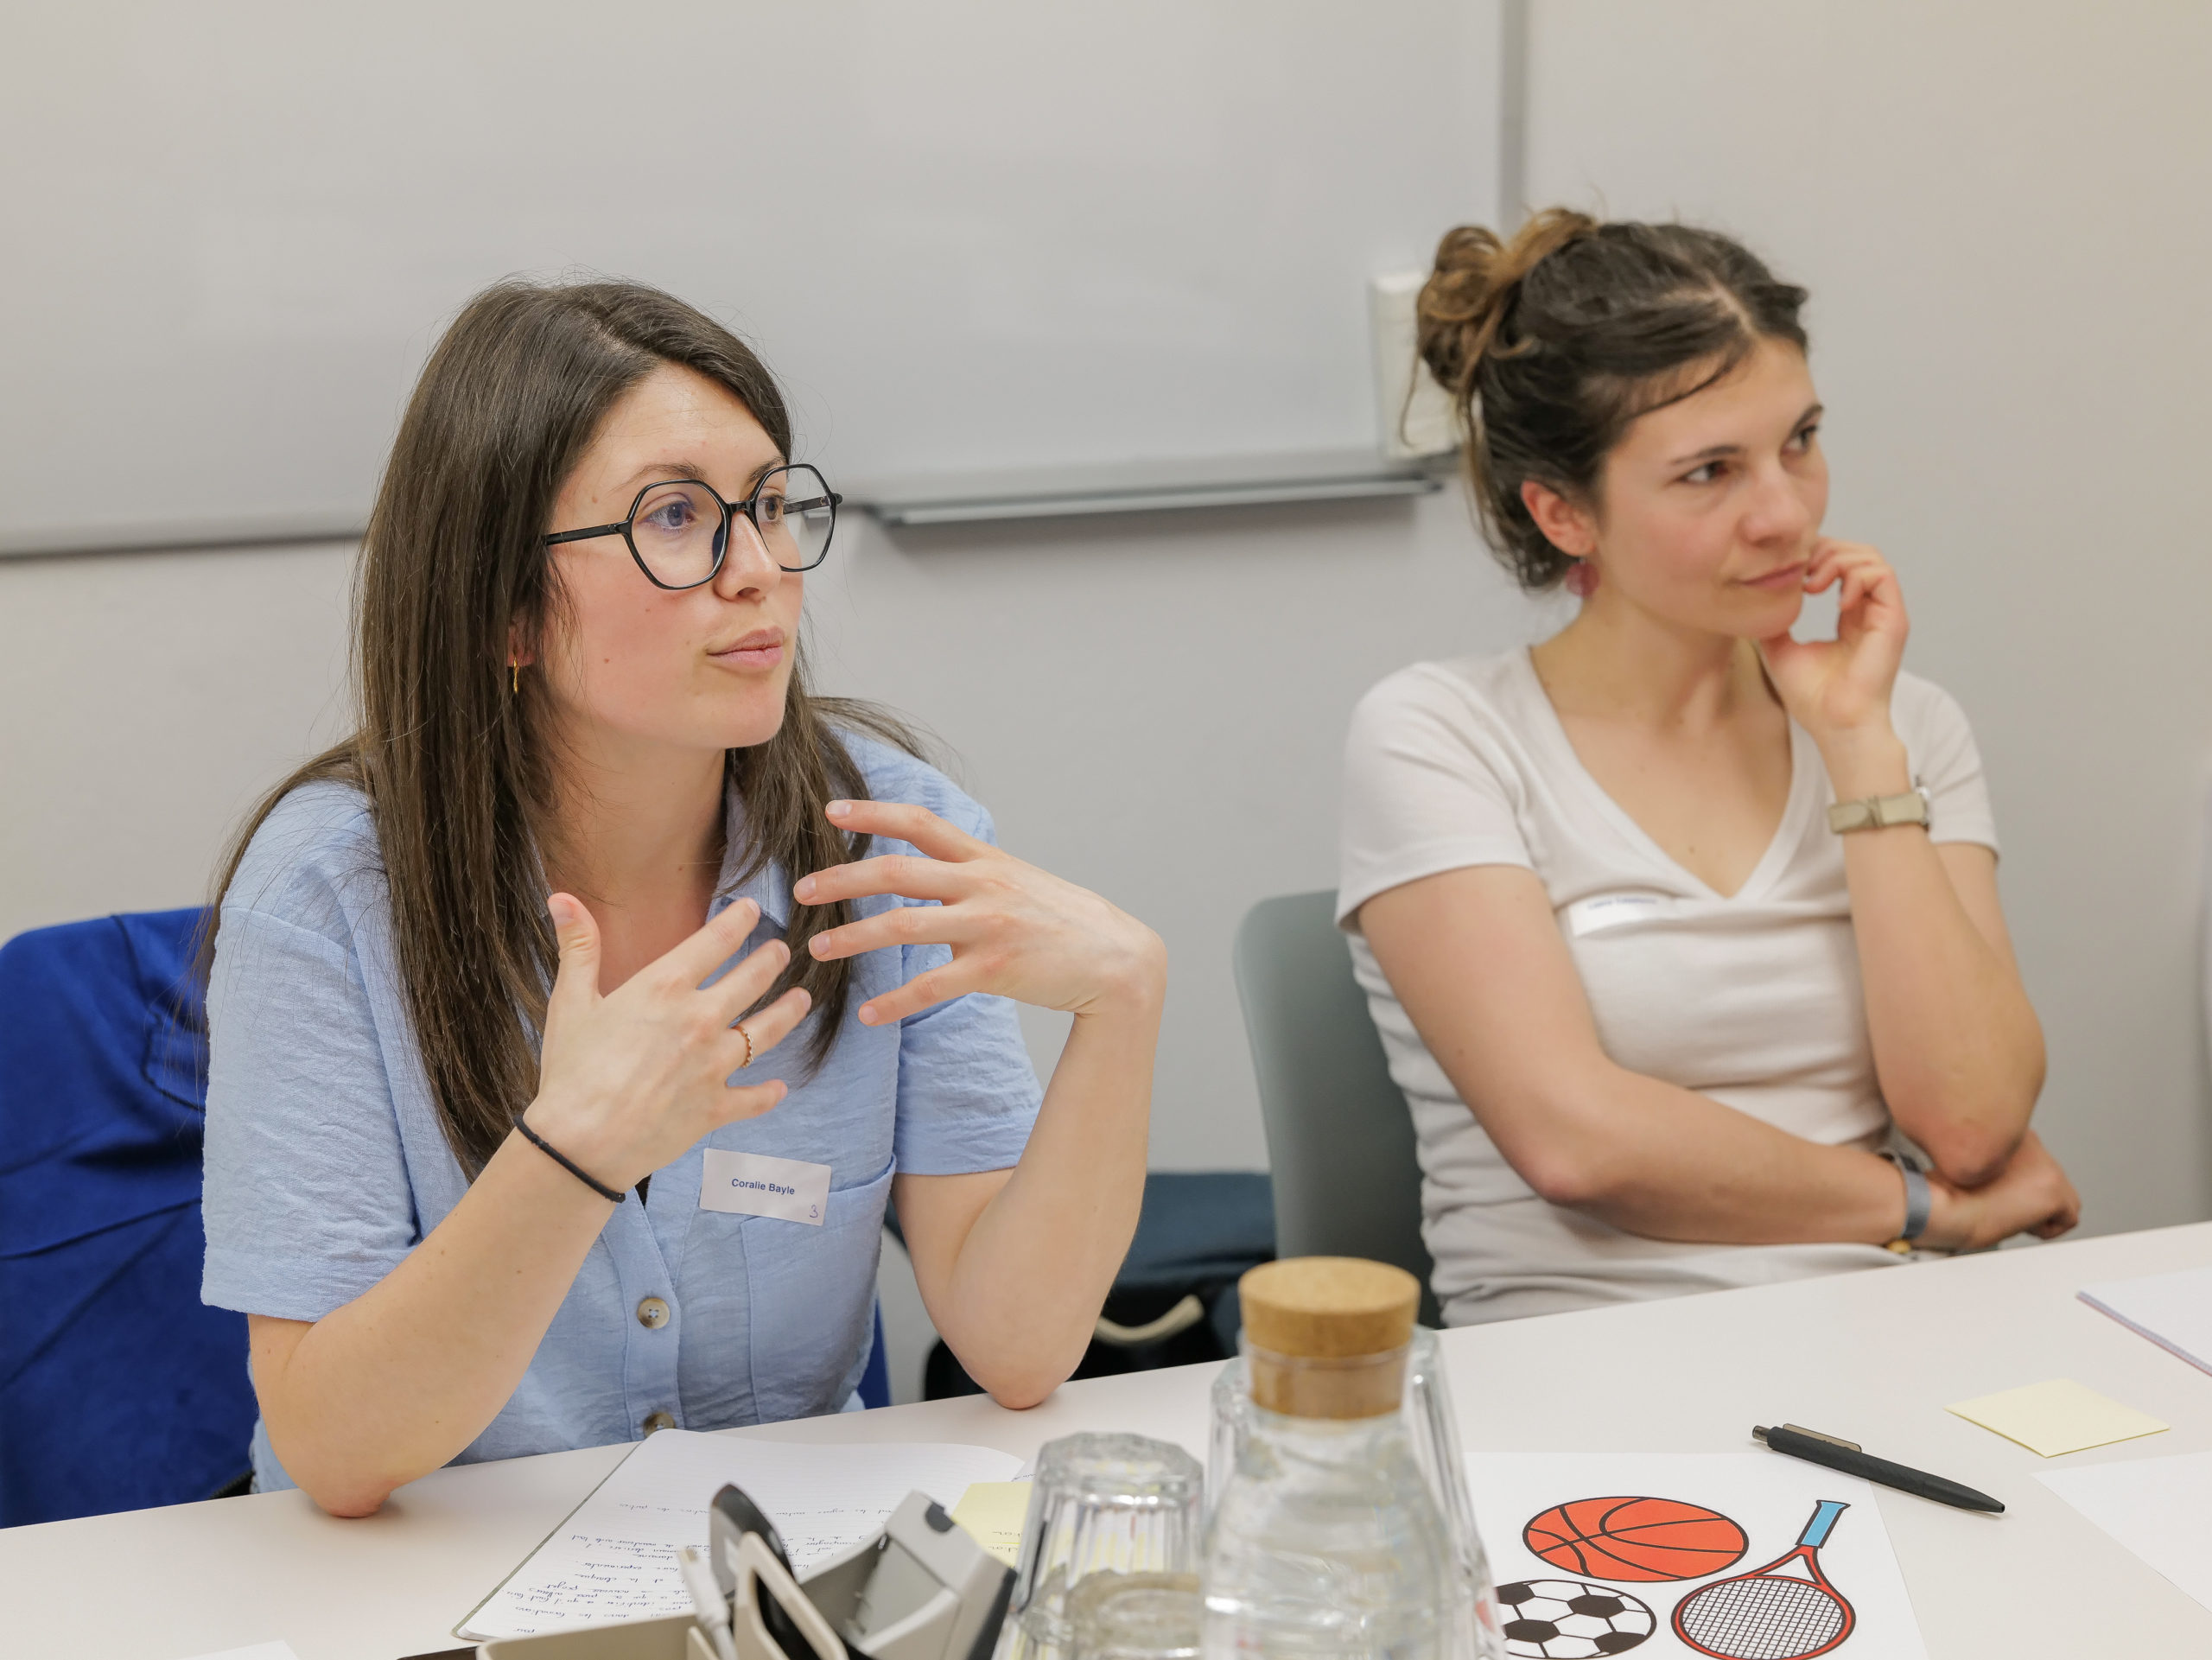 Zwei Teilnehmerinnen während des Ideenfindungs-Workshops. Die eine hört zu, während die andere ihre Idee mitteilt.